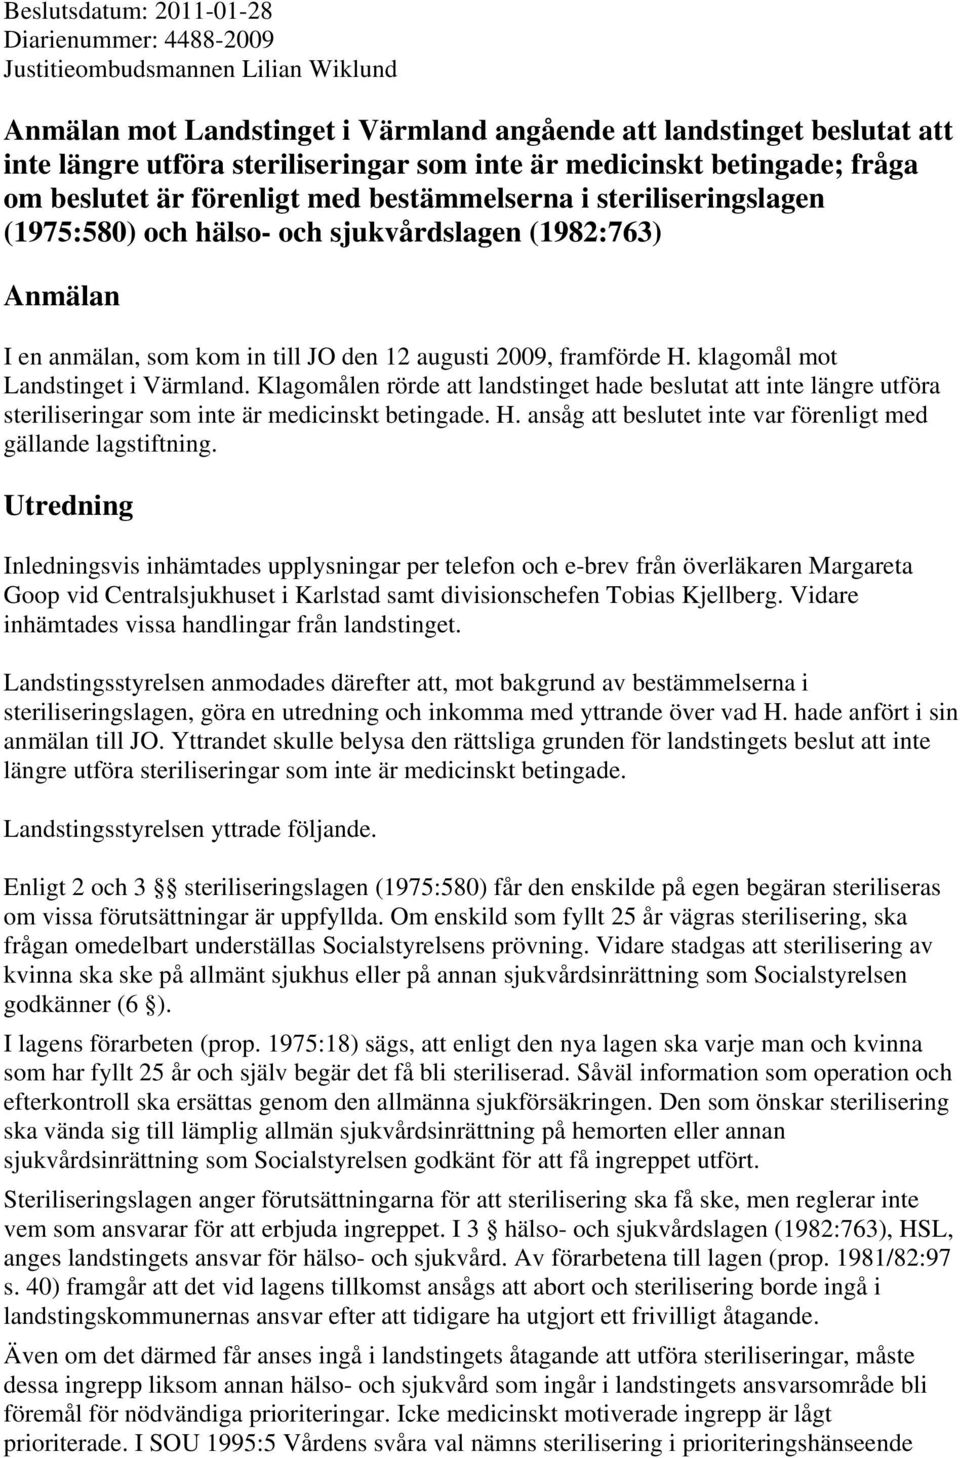 12 augusti 2009, framförde H. klagomål mot Landstinget i Värmland. Klagomålen rörde att landstinget hade beslutat att inte längre utföra steriliseringar som inte är medicinskt betingade. H. ansåg att beslutet inte var förenligt med gällande lagstiftning.